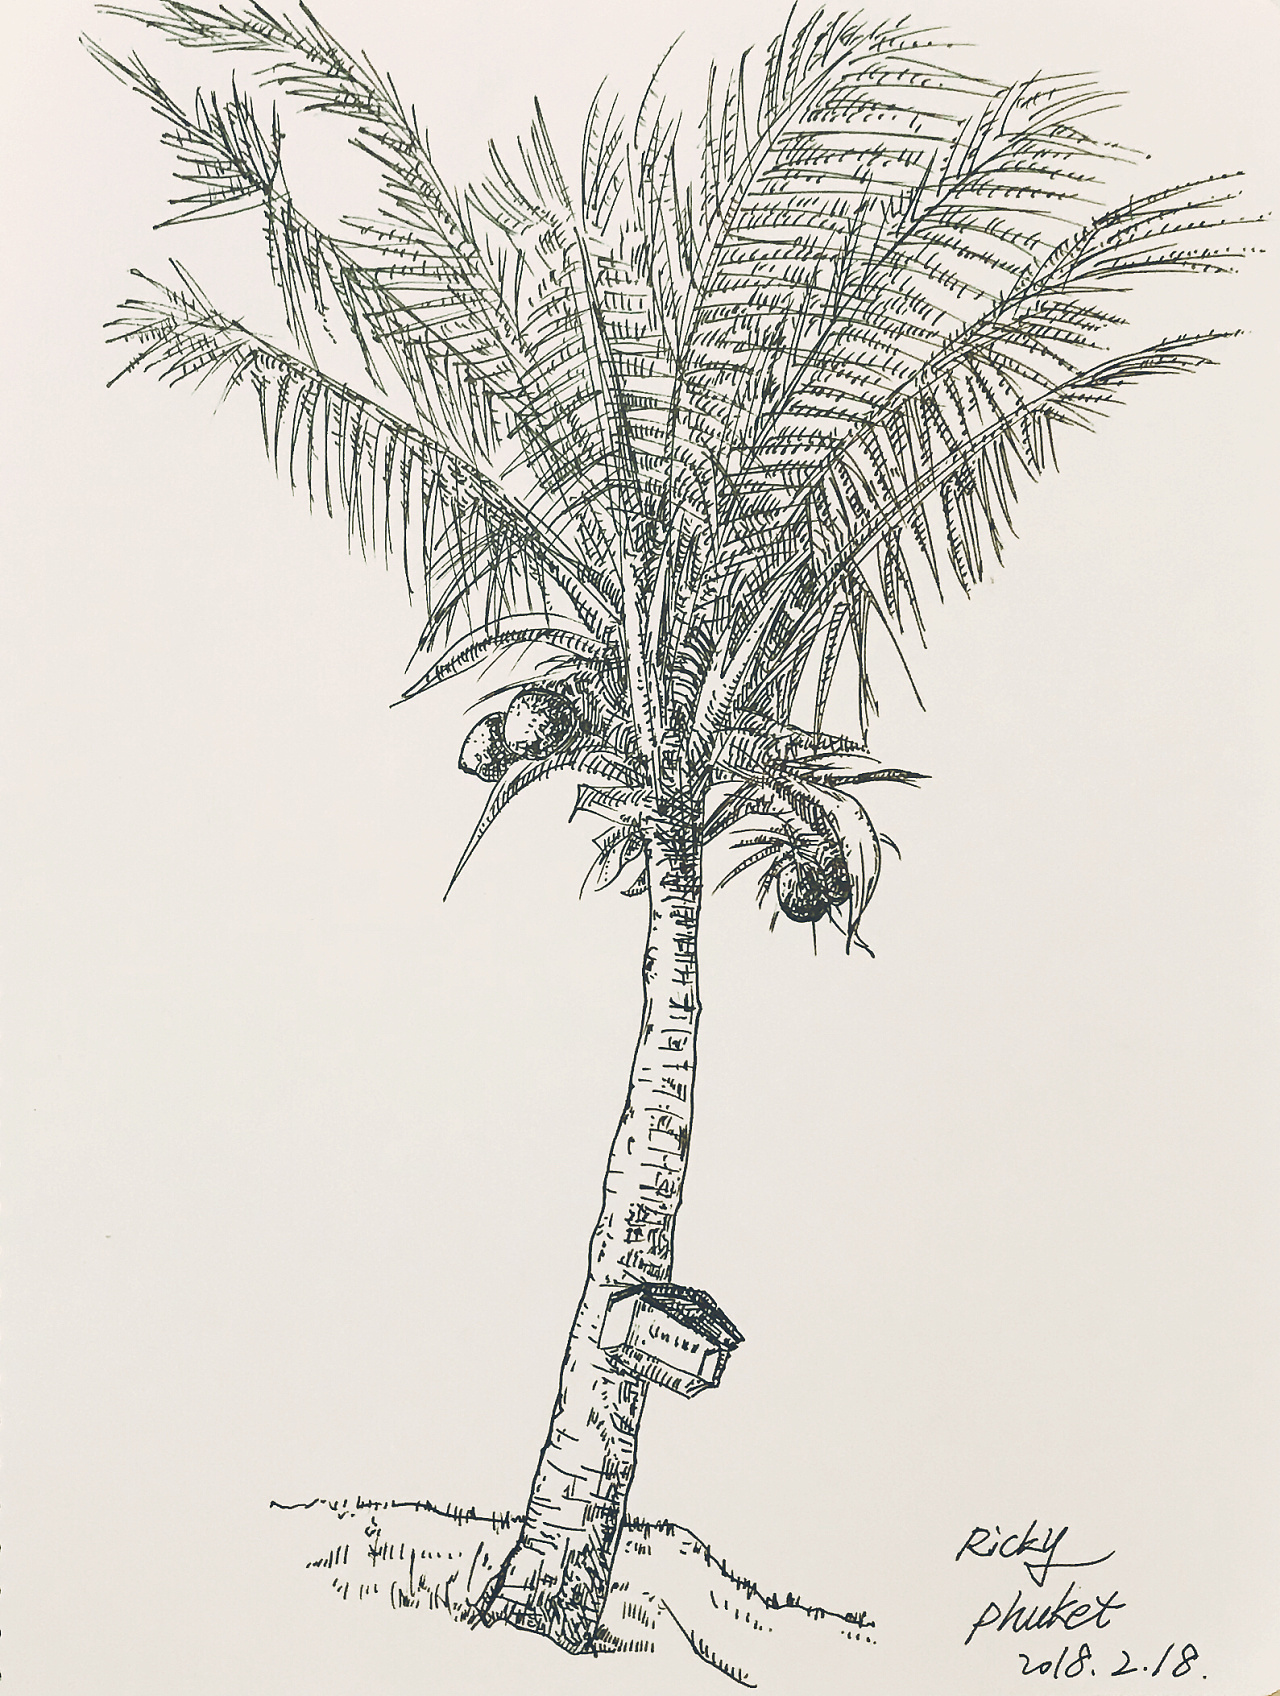 椰子树简笔画图片大全 简单易学_椰子树简笔画